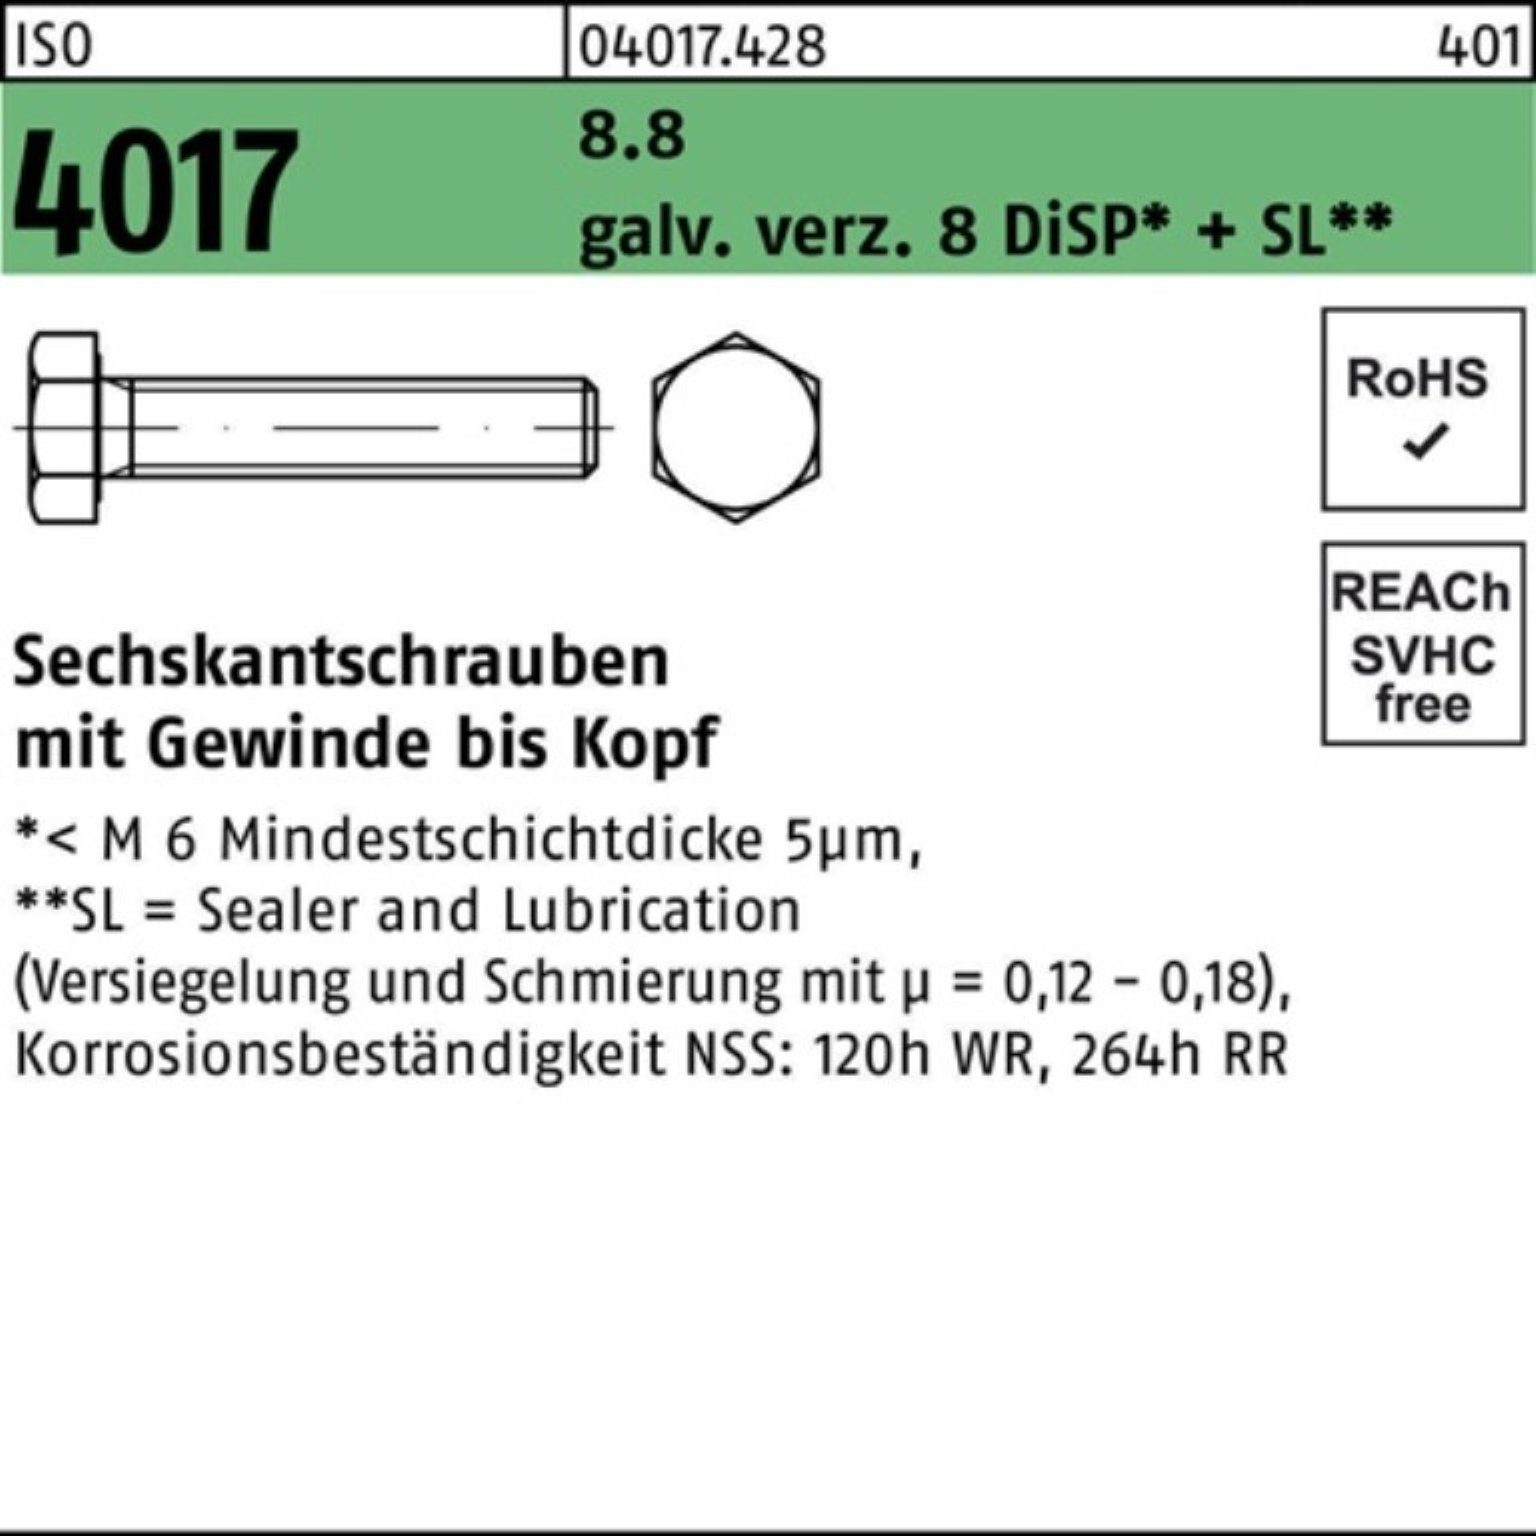 Bufab Sechskantschraube 100er Pack Sechskantschraube ISO 4017 VG M12x 85 8.8 galv.verz. 8 DiSP